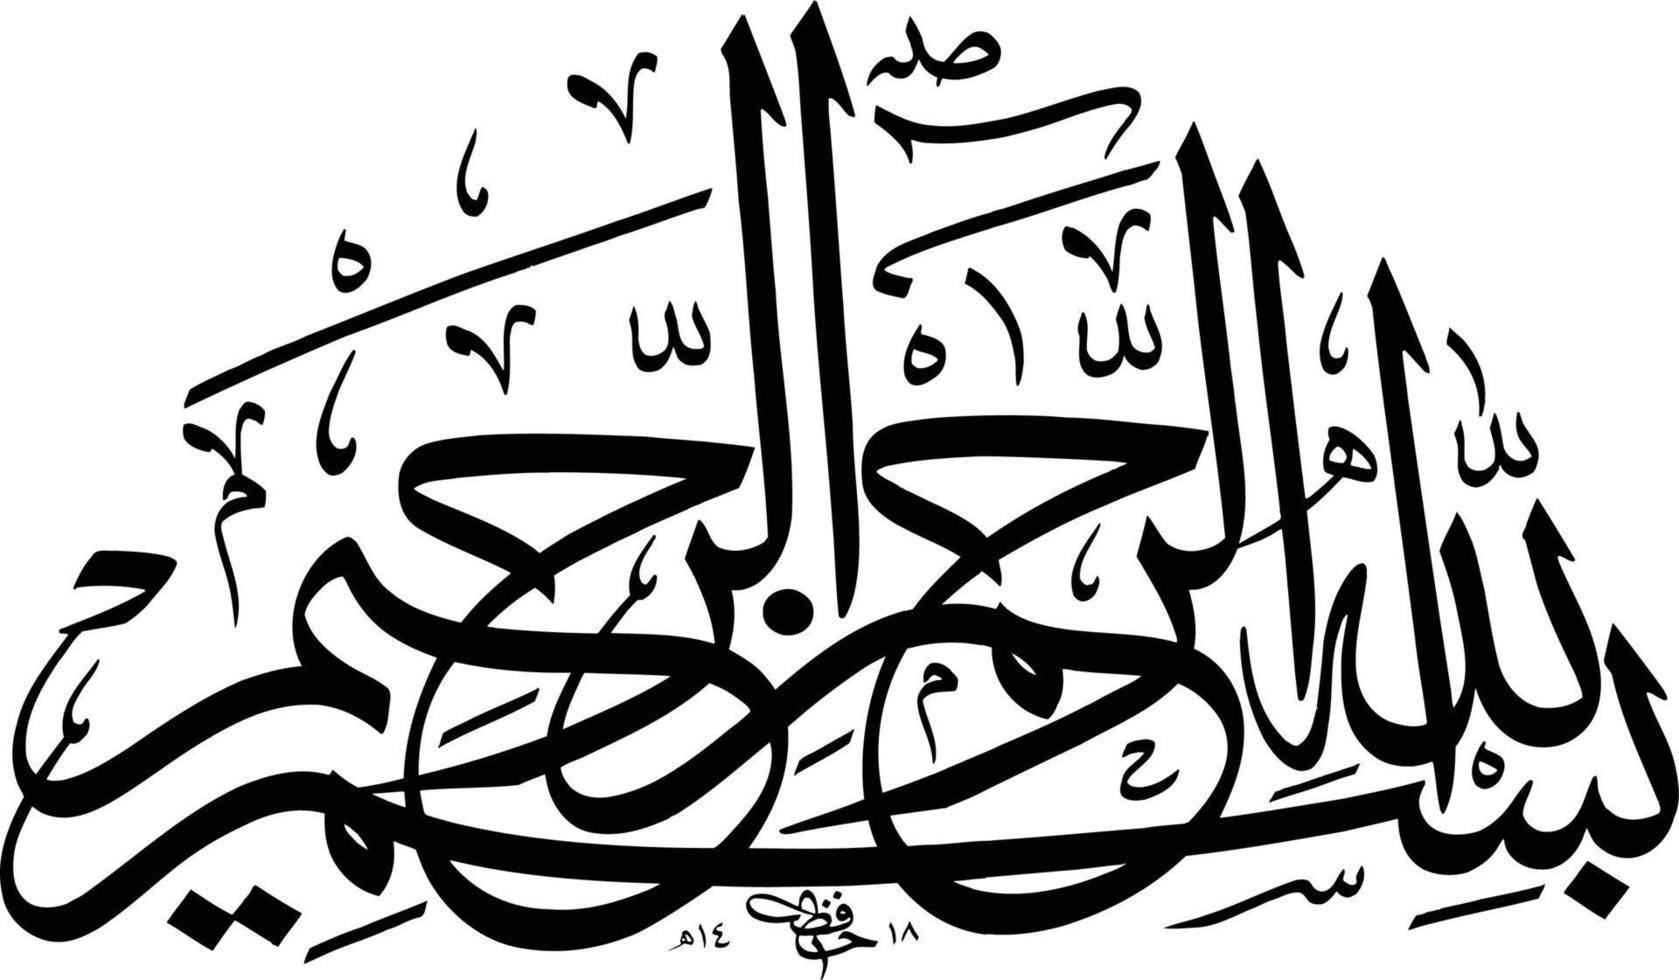 bismila titel Islamitisch schoonschrift vrij vector